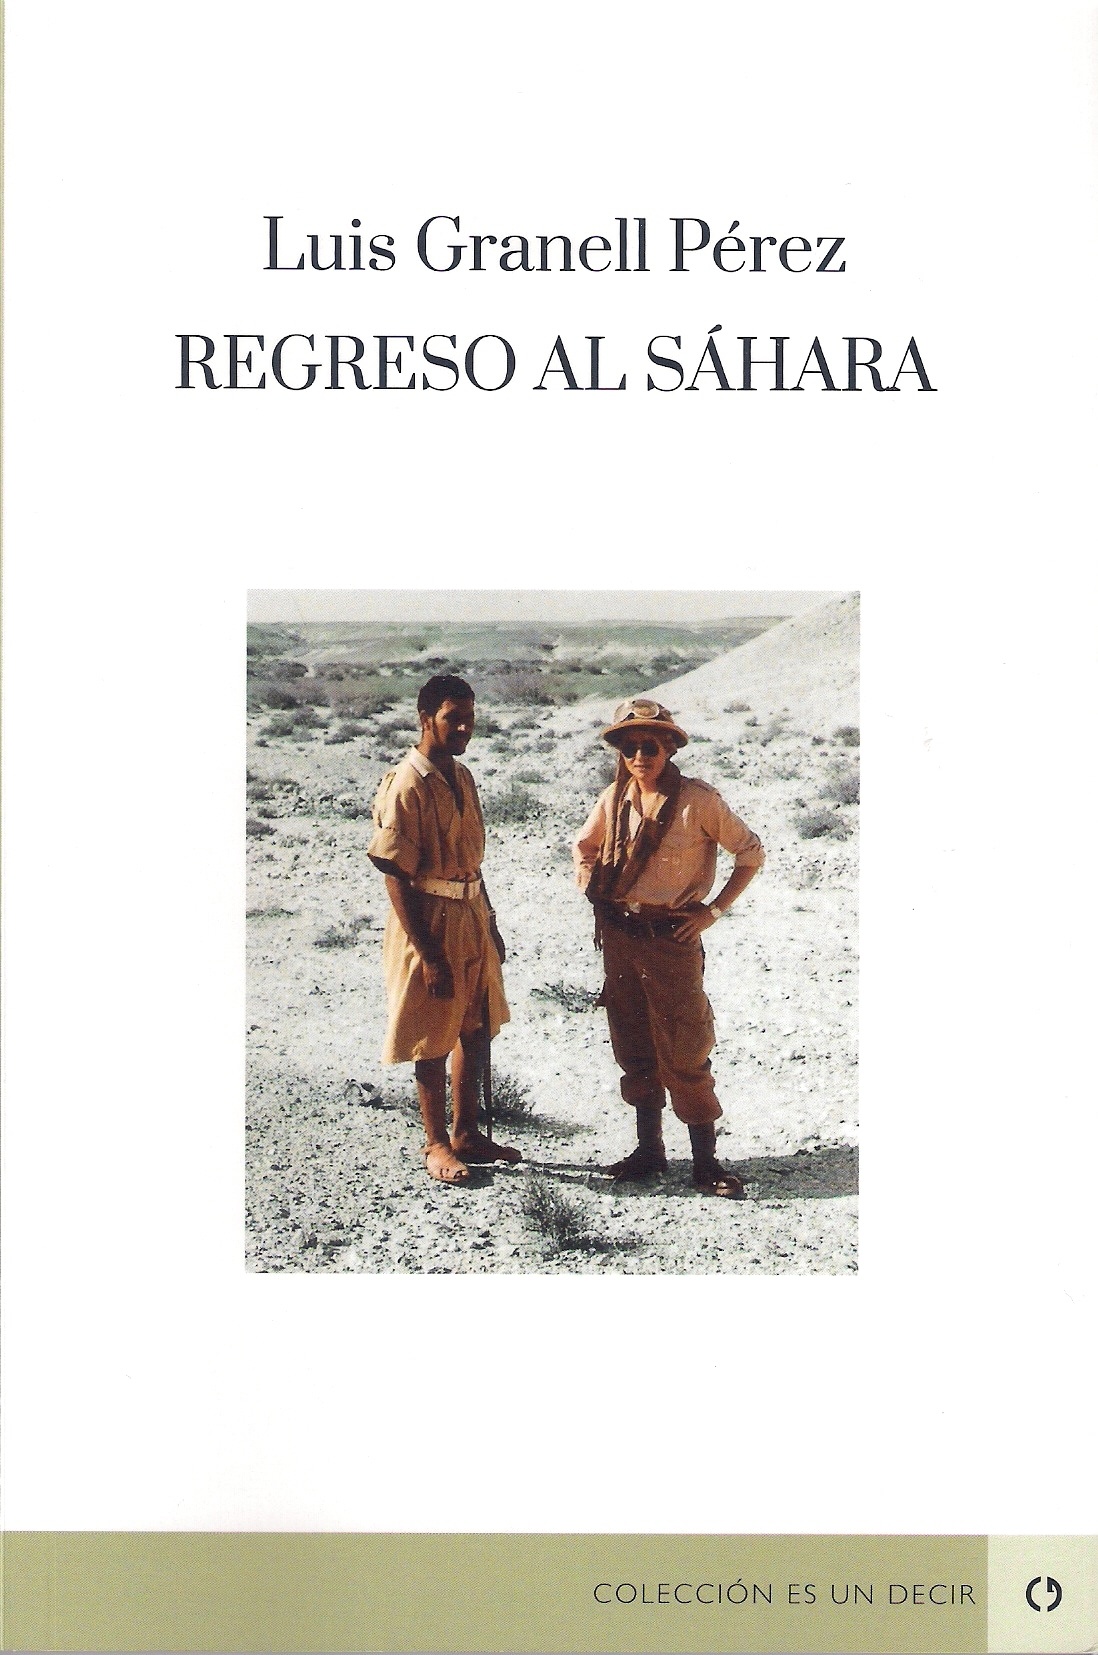 Luis Granell presenta "Regreso al Sáhara"